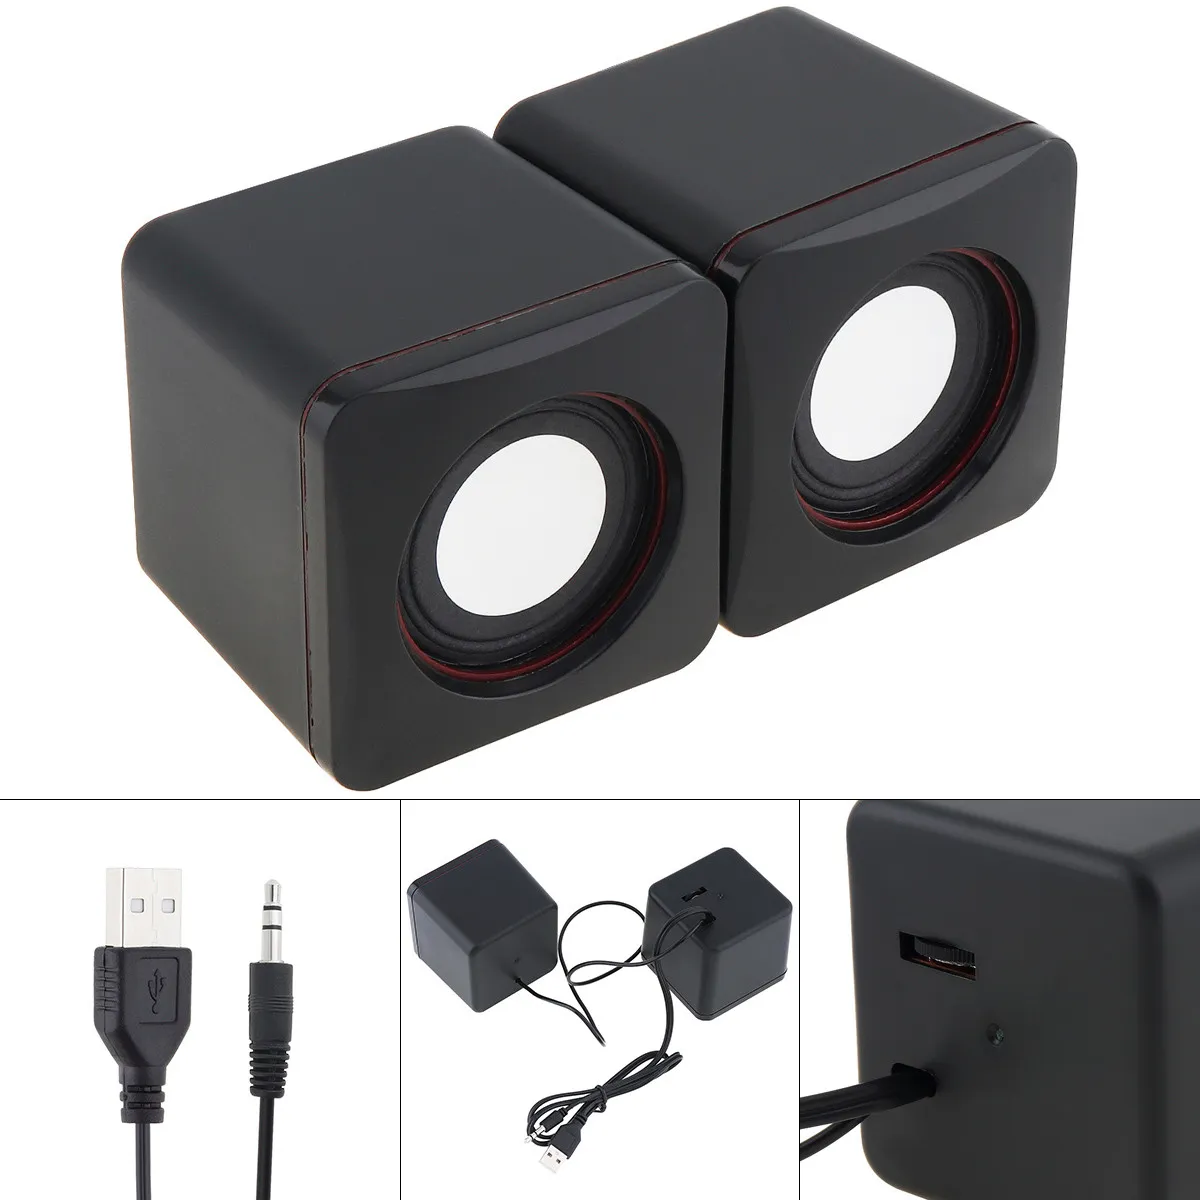 Tragbare 4-W-USB-2.0-Mini-Lautsprecher, Computer-Soundbox mit 3,5-mm-Stereo-Klinkenstecker und USB-Stromversorgung für PC, Laptop, Smartphone